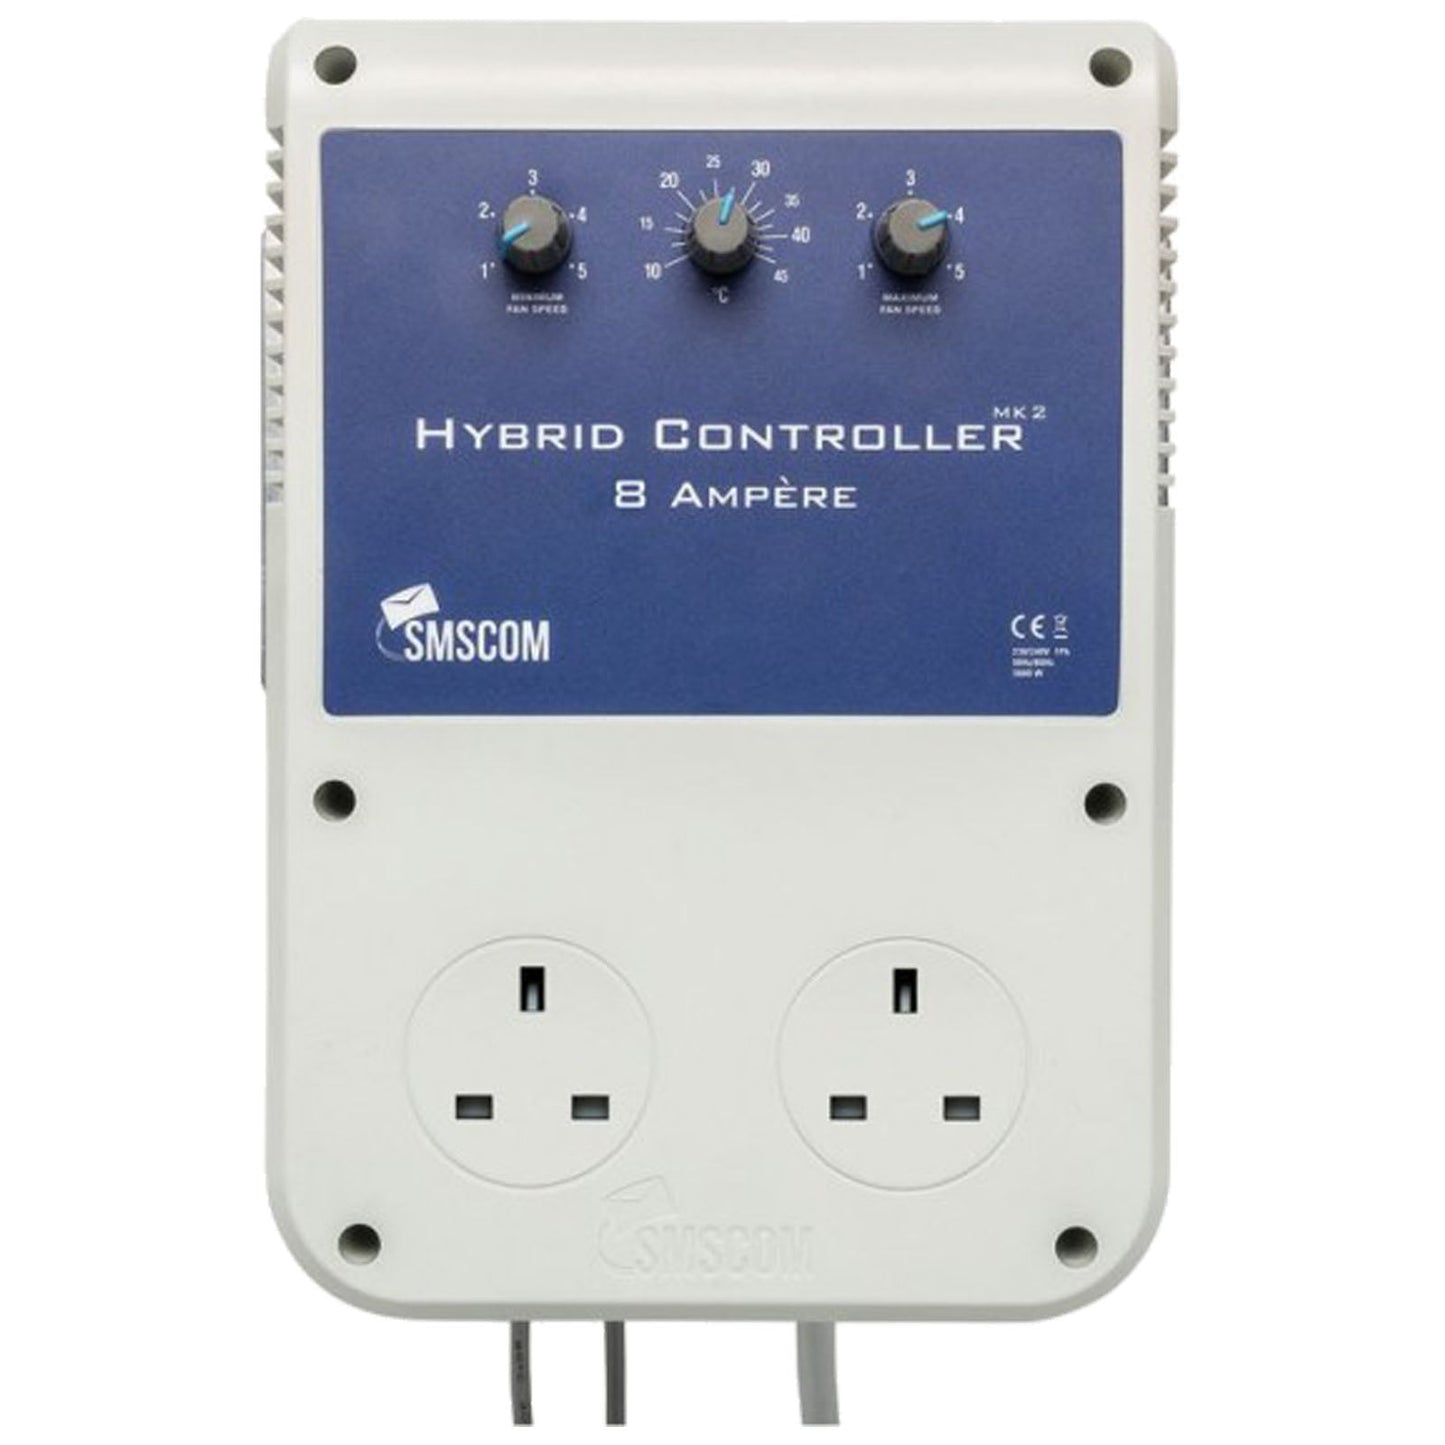 Hybrid Controller MK2 SMSCOM